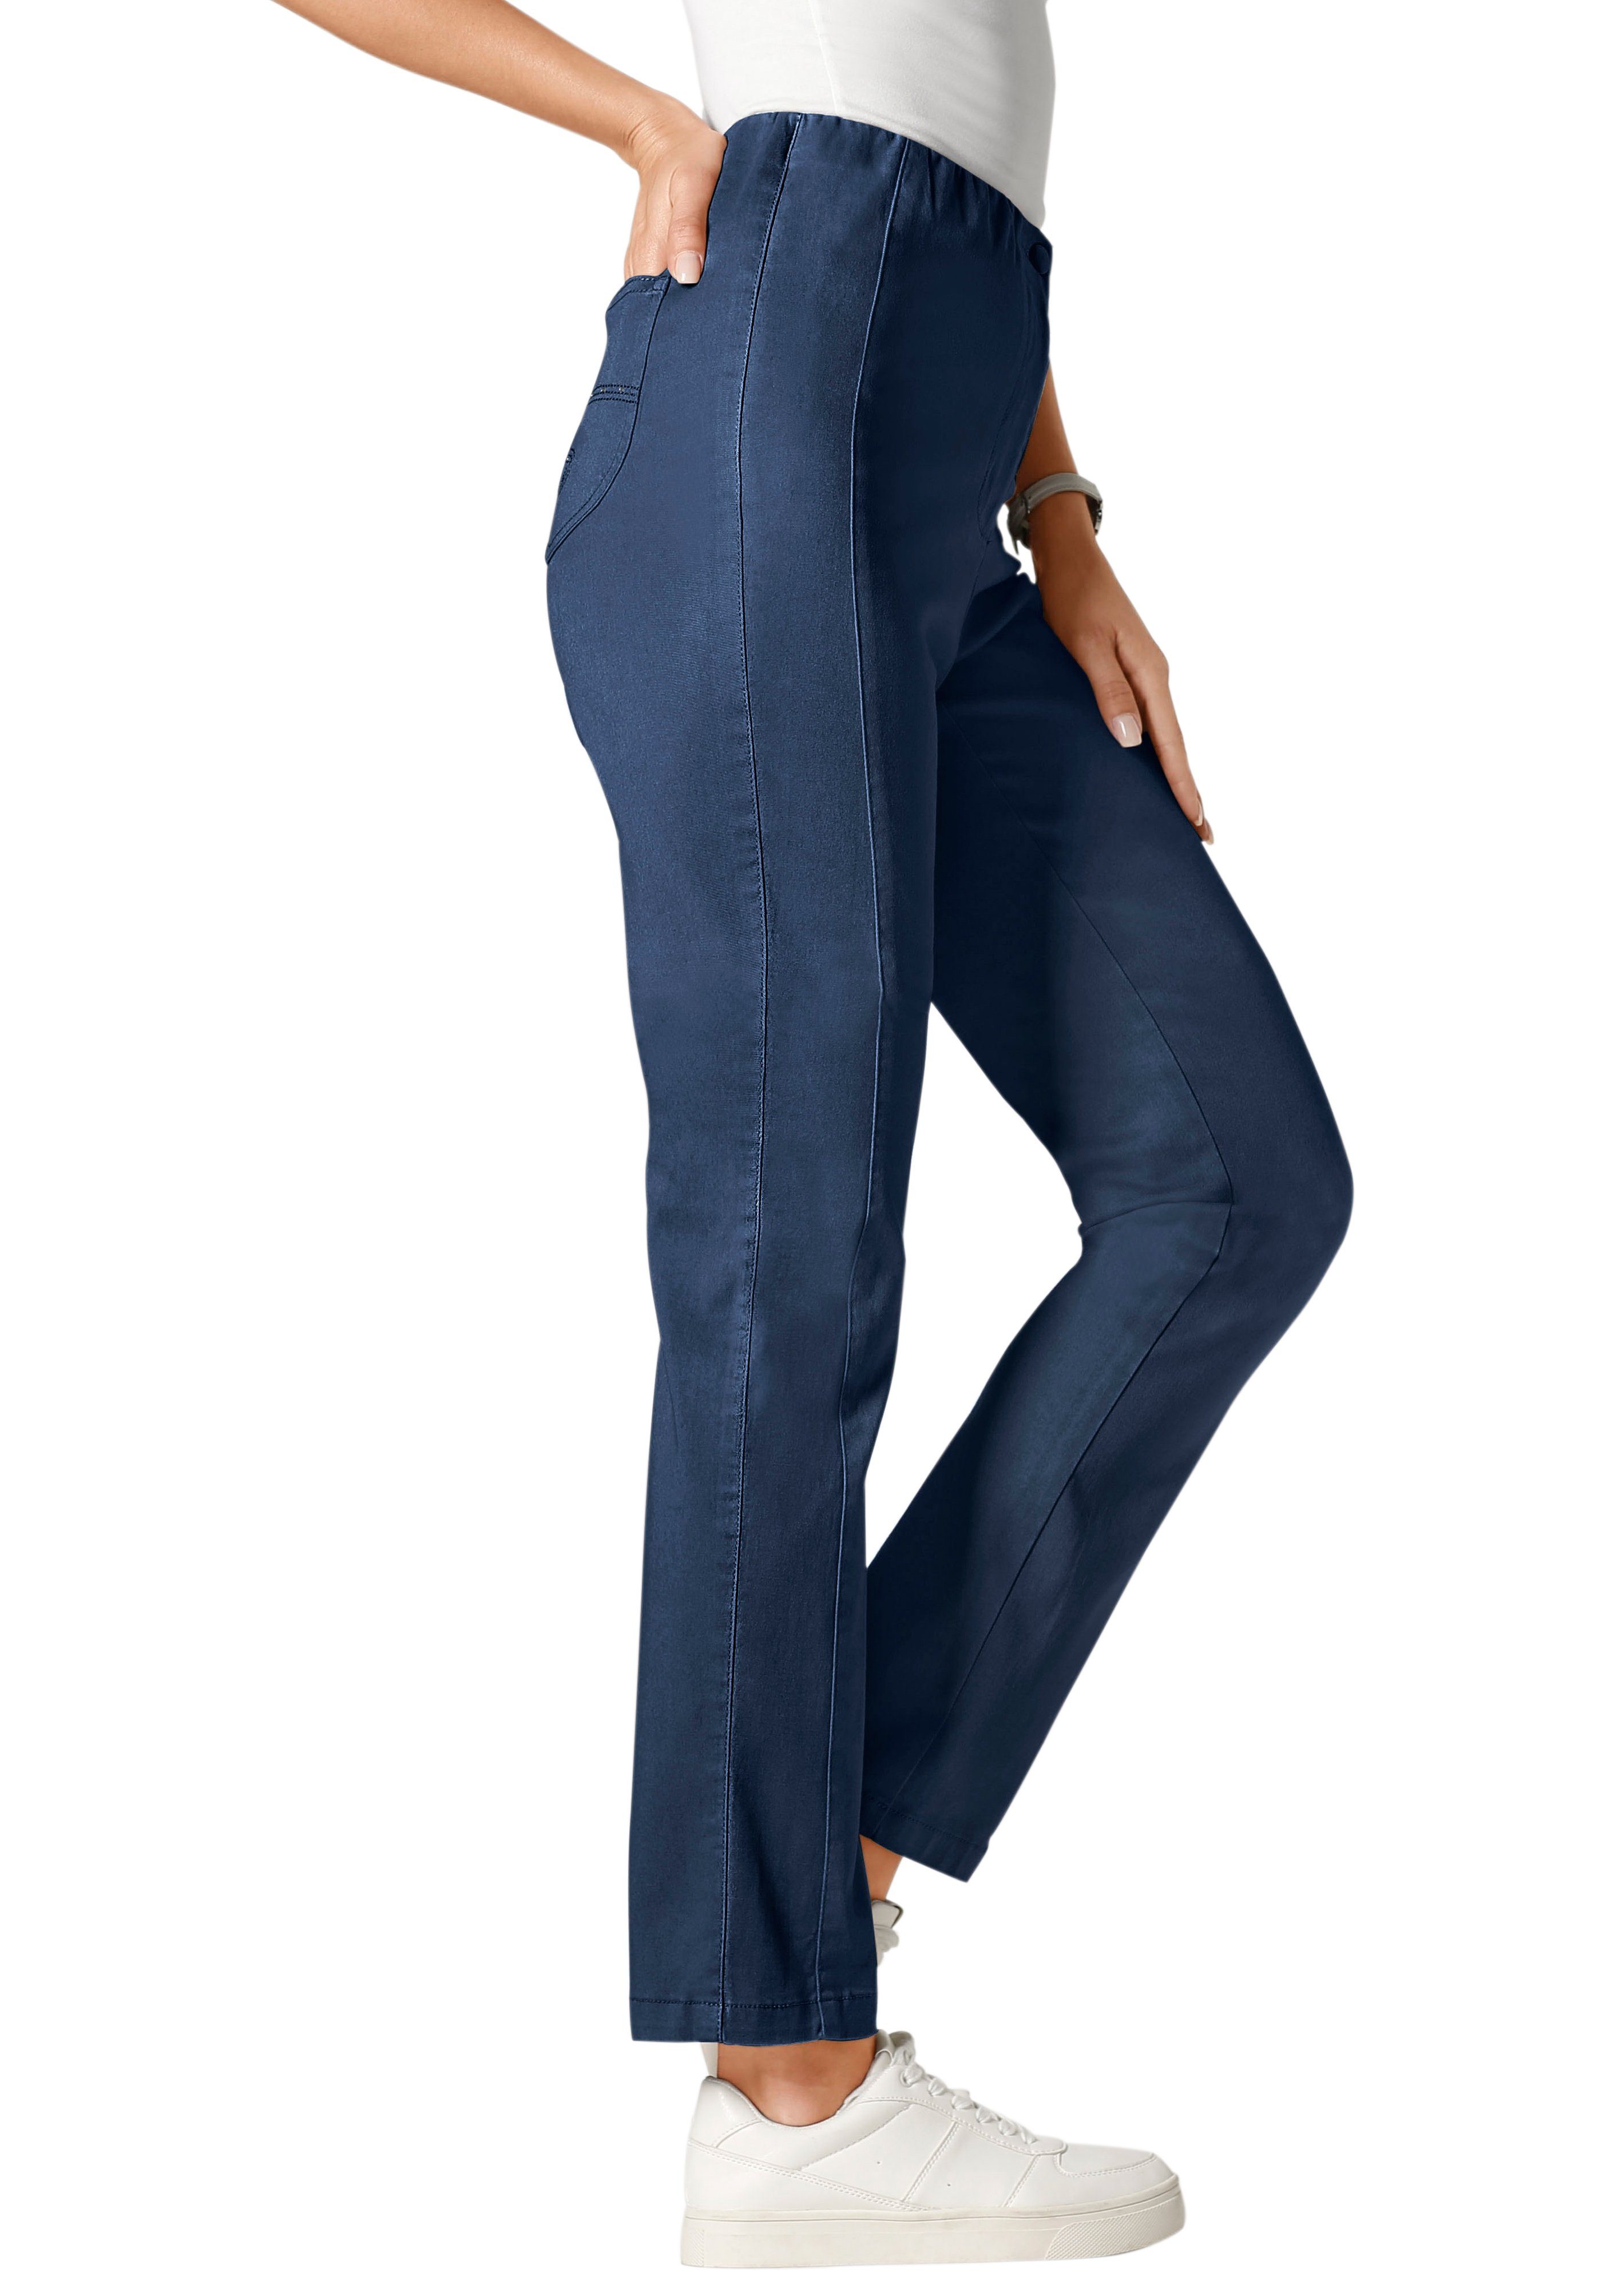 Classic Basics NU 15% KORTING: Classic Basics jeans met aan de binnenkant geplaatste elastische band